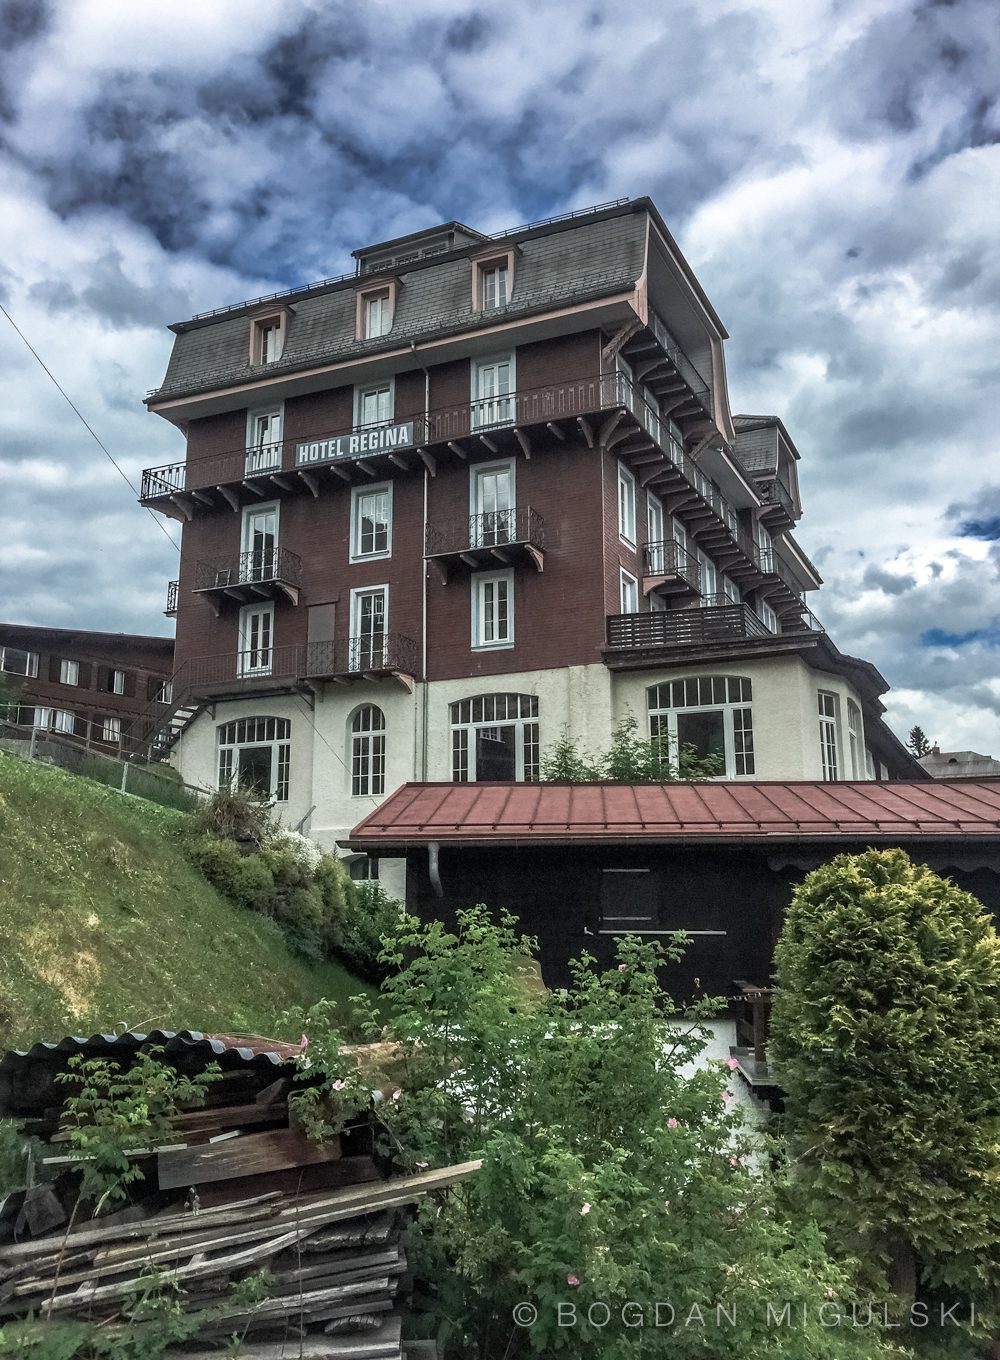 Hotel Regina: Mürren, Switzerland